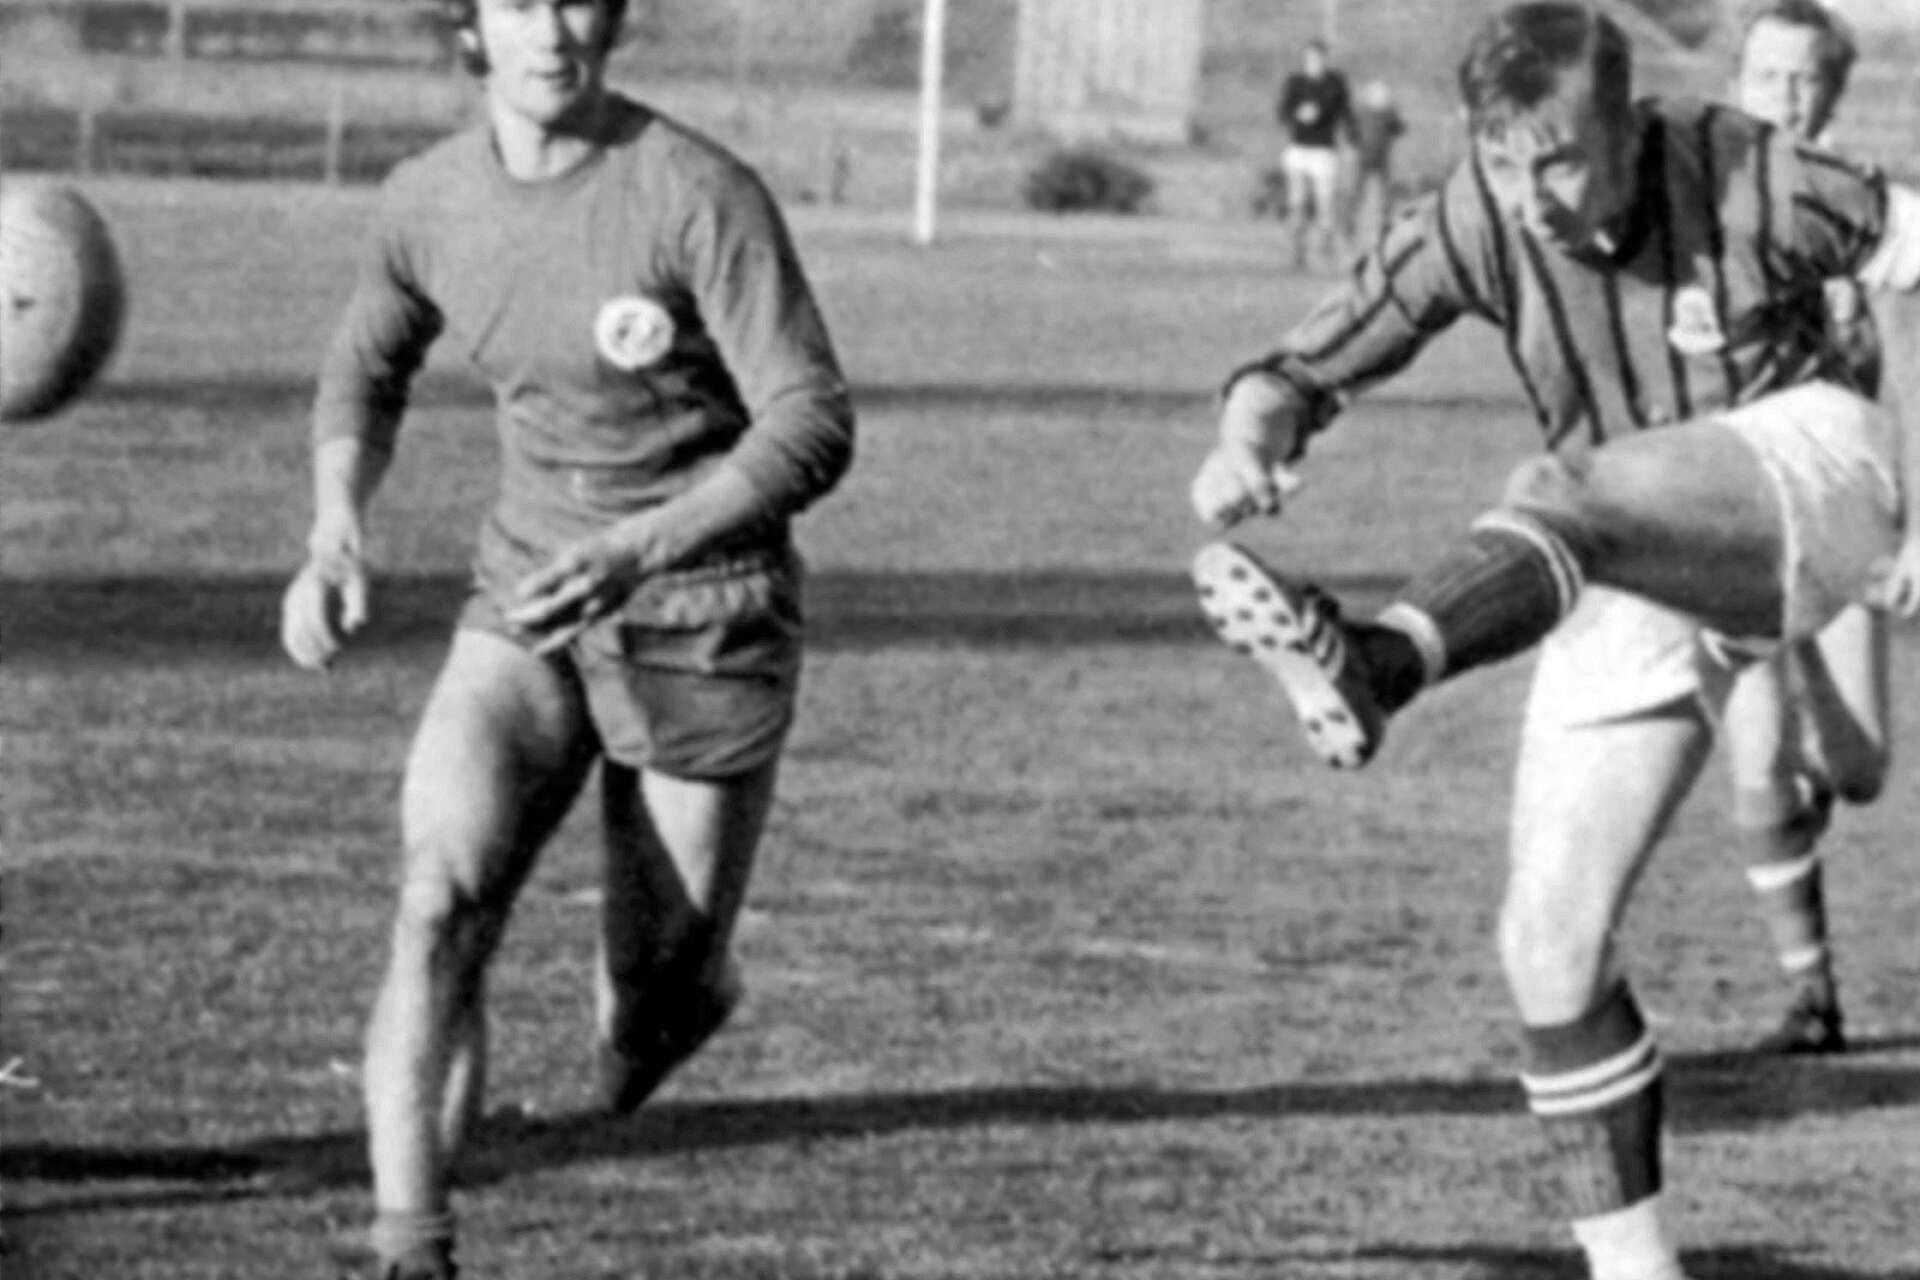 1971 möttes Sifhälla och Säffle FF för första gången i samma serie. Säffle FF vann båda matcherna. För första gången placerade sig Säffle FF högre i seriesystemet än Sifhälla. På bilden ser man Olle Jansson göra ett av målen med Sifhällas John-Erik Eriksson som närmaste vittne.